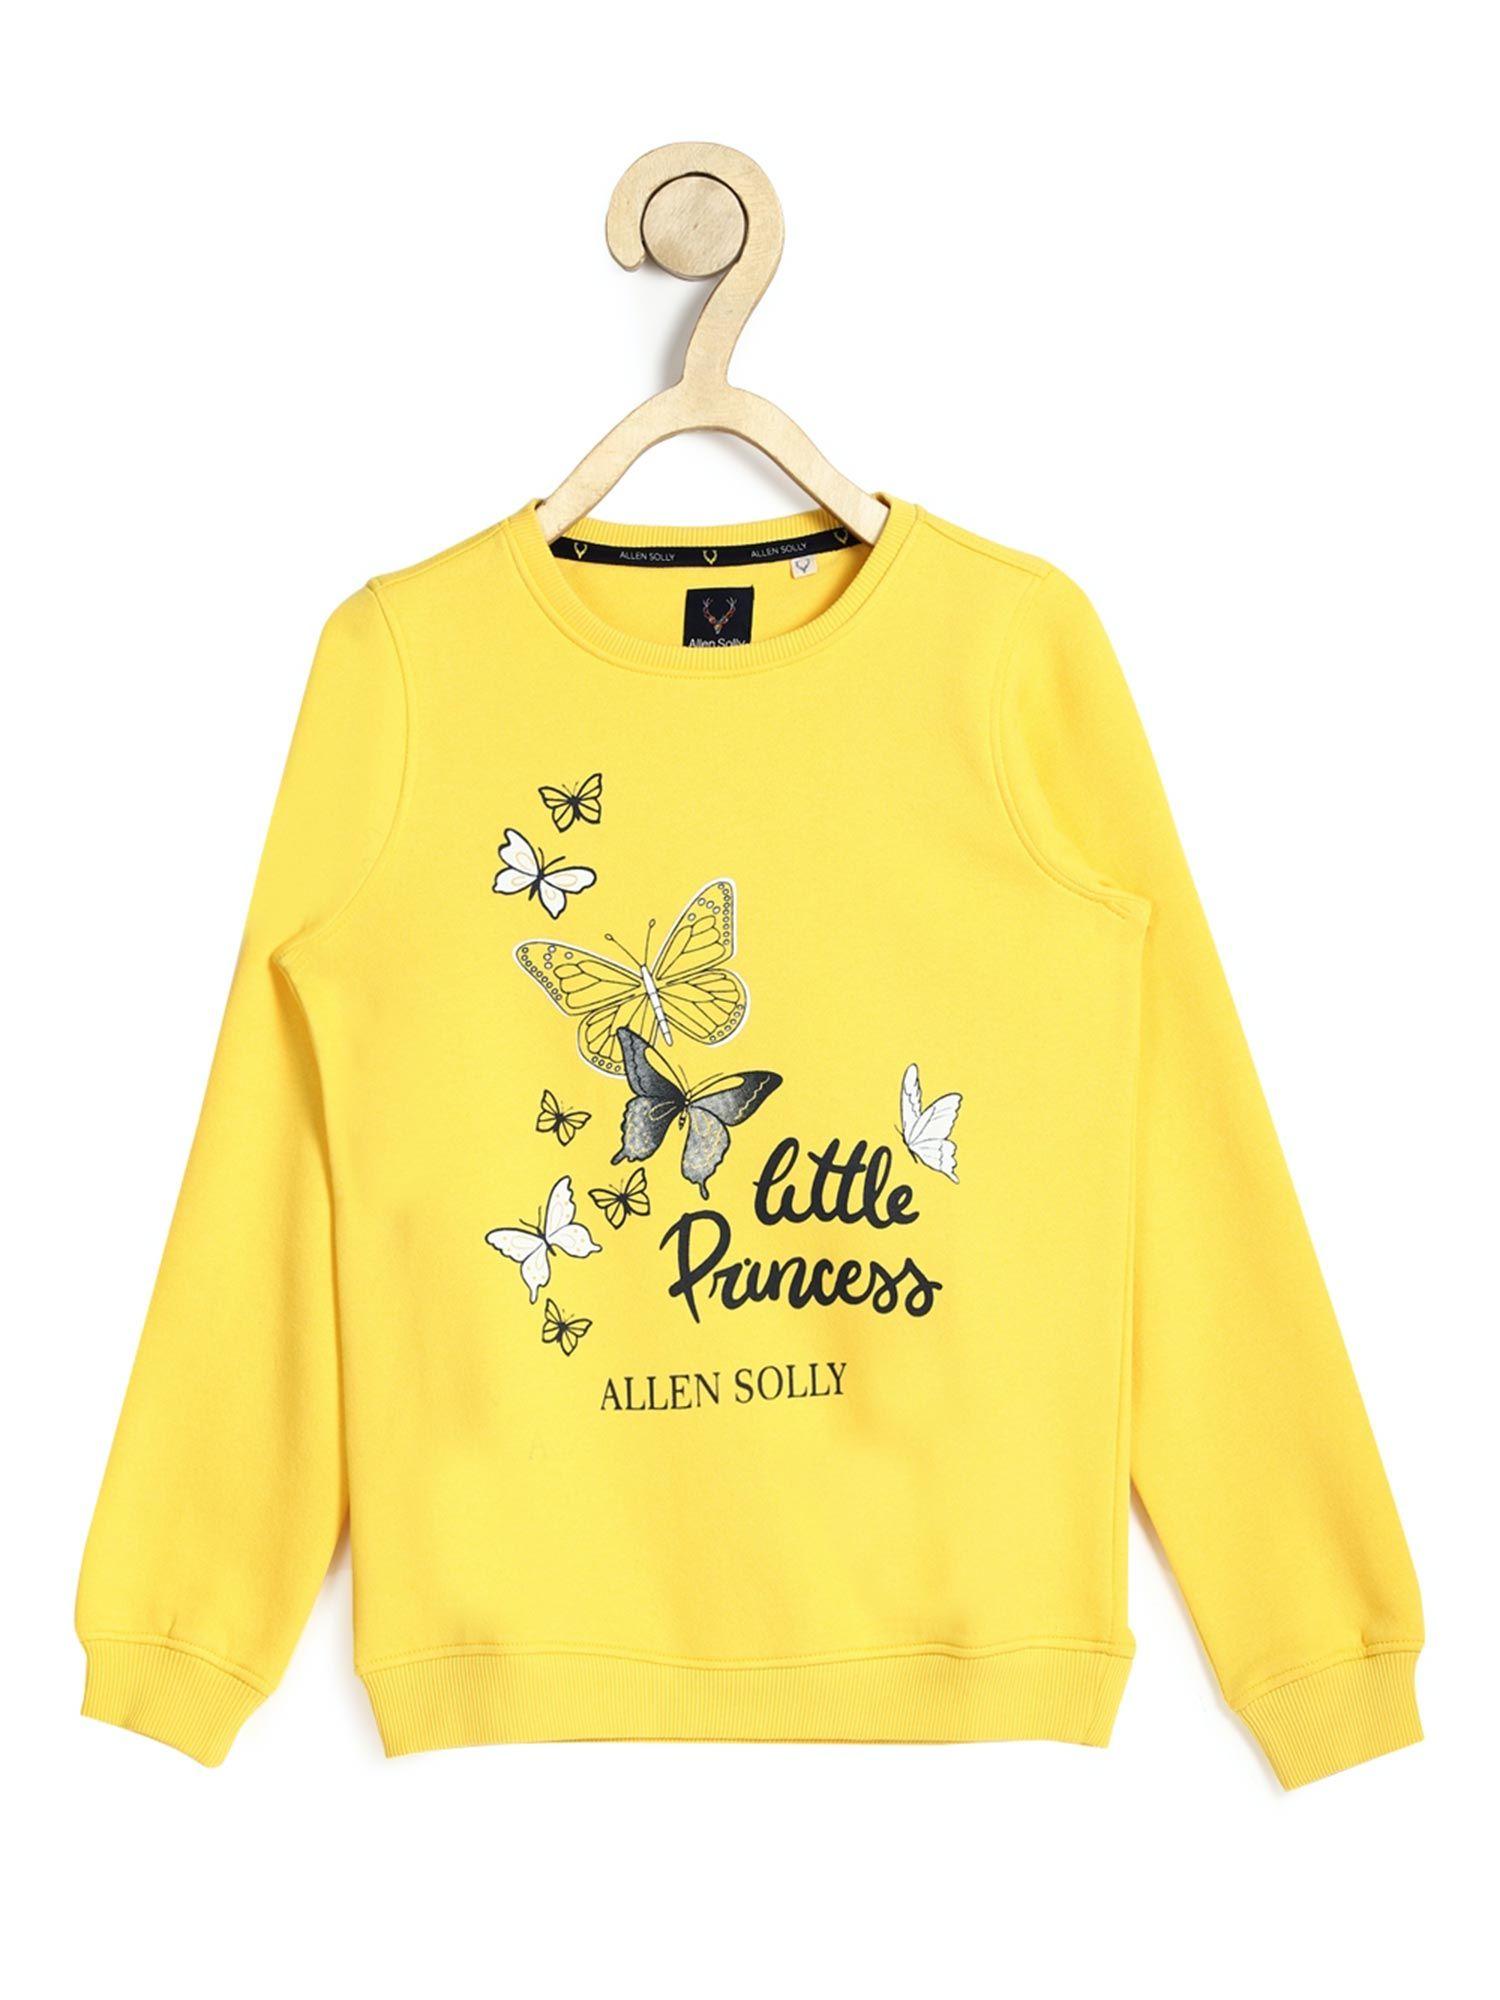 Girls Yellow Graphic Sweatshirts